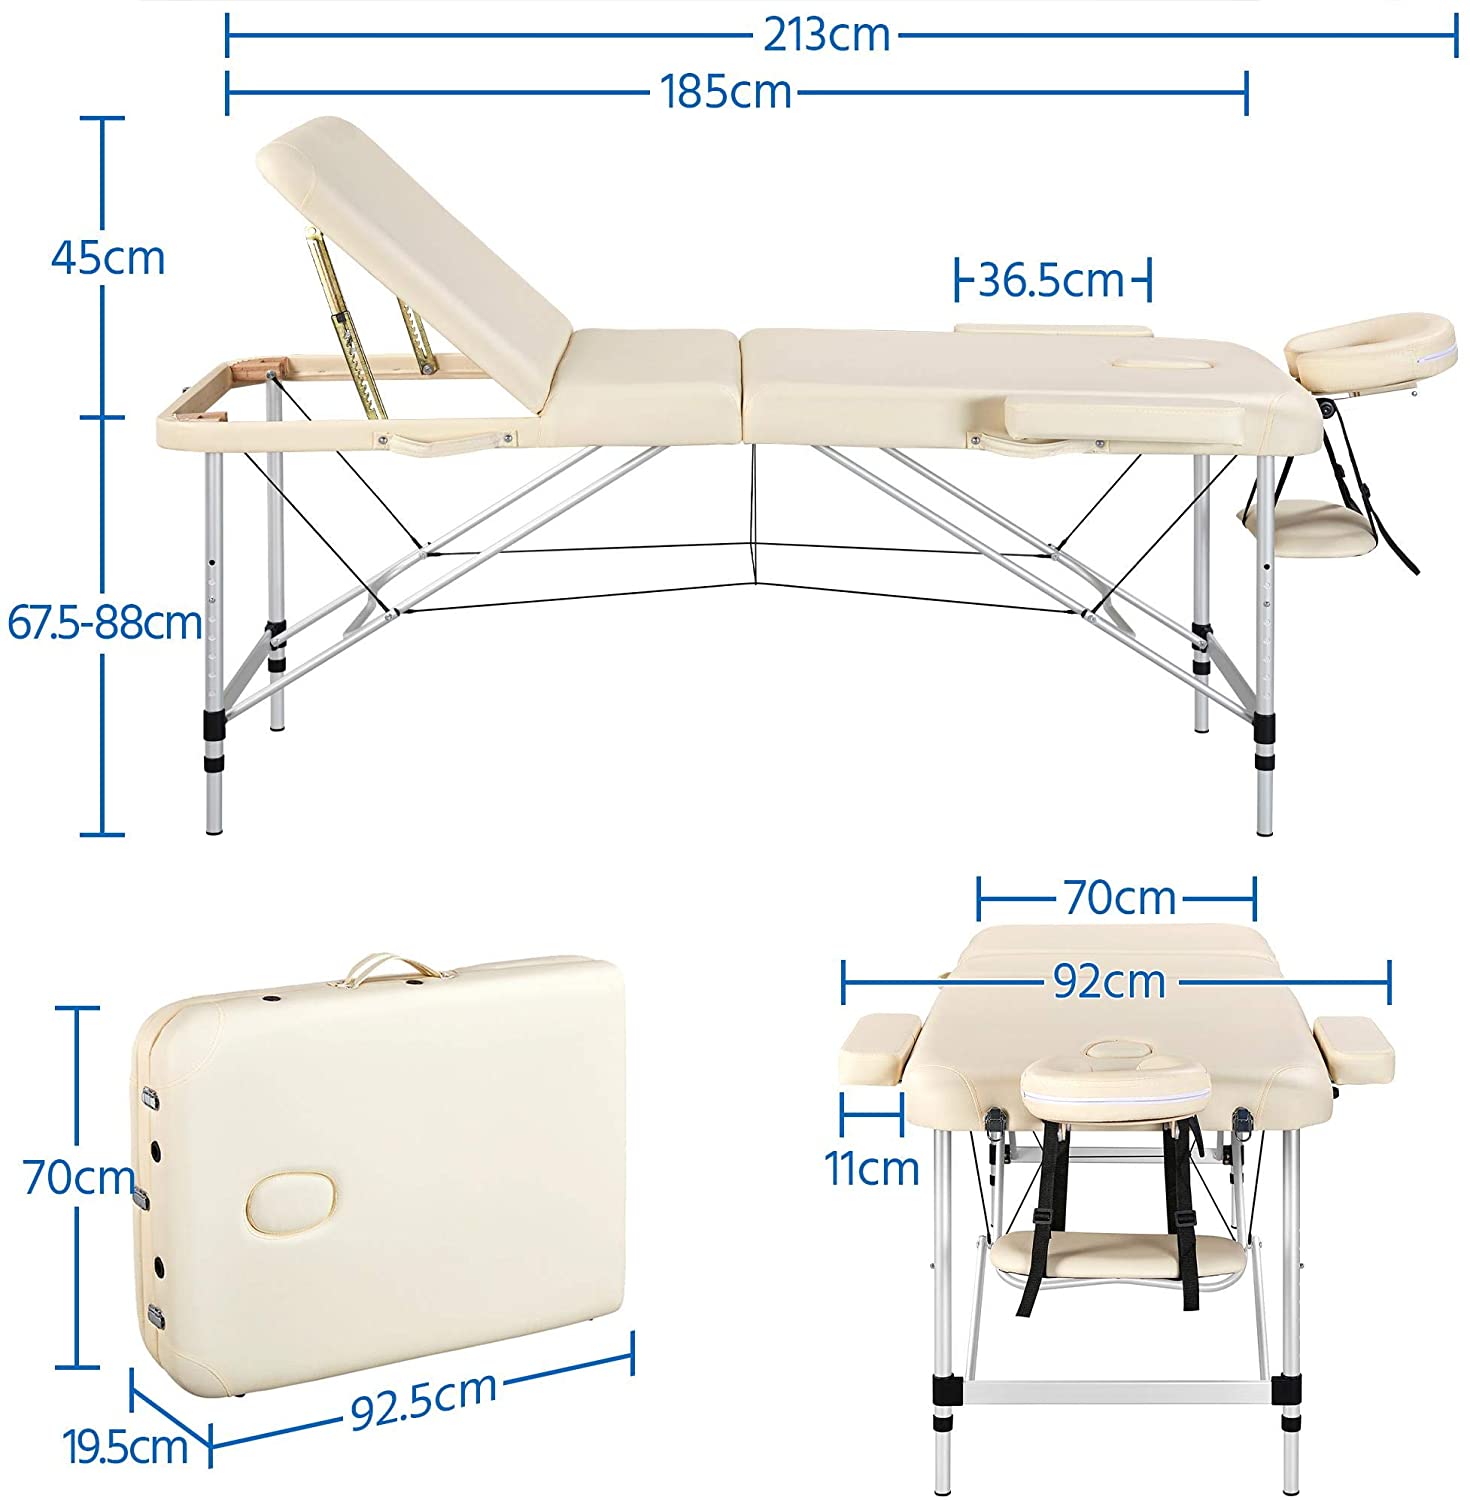 Lettino da massaggio portatile - 185 x 60 x 59 cm - 180 kg - Bianco